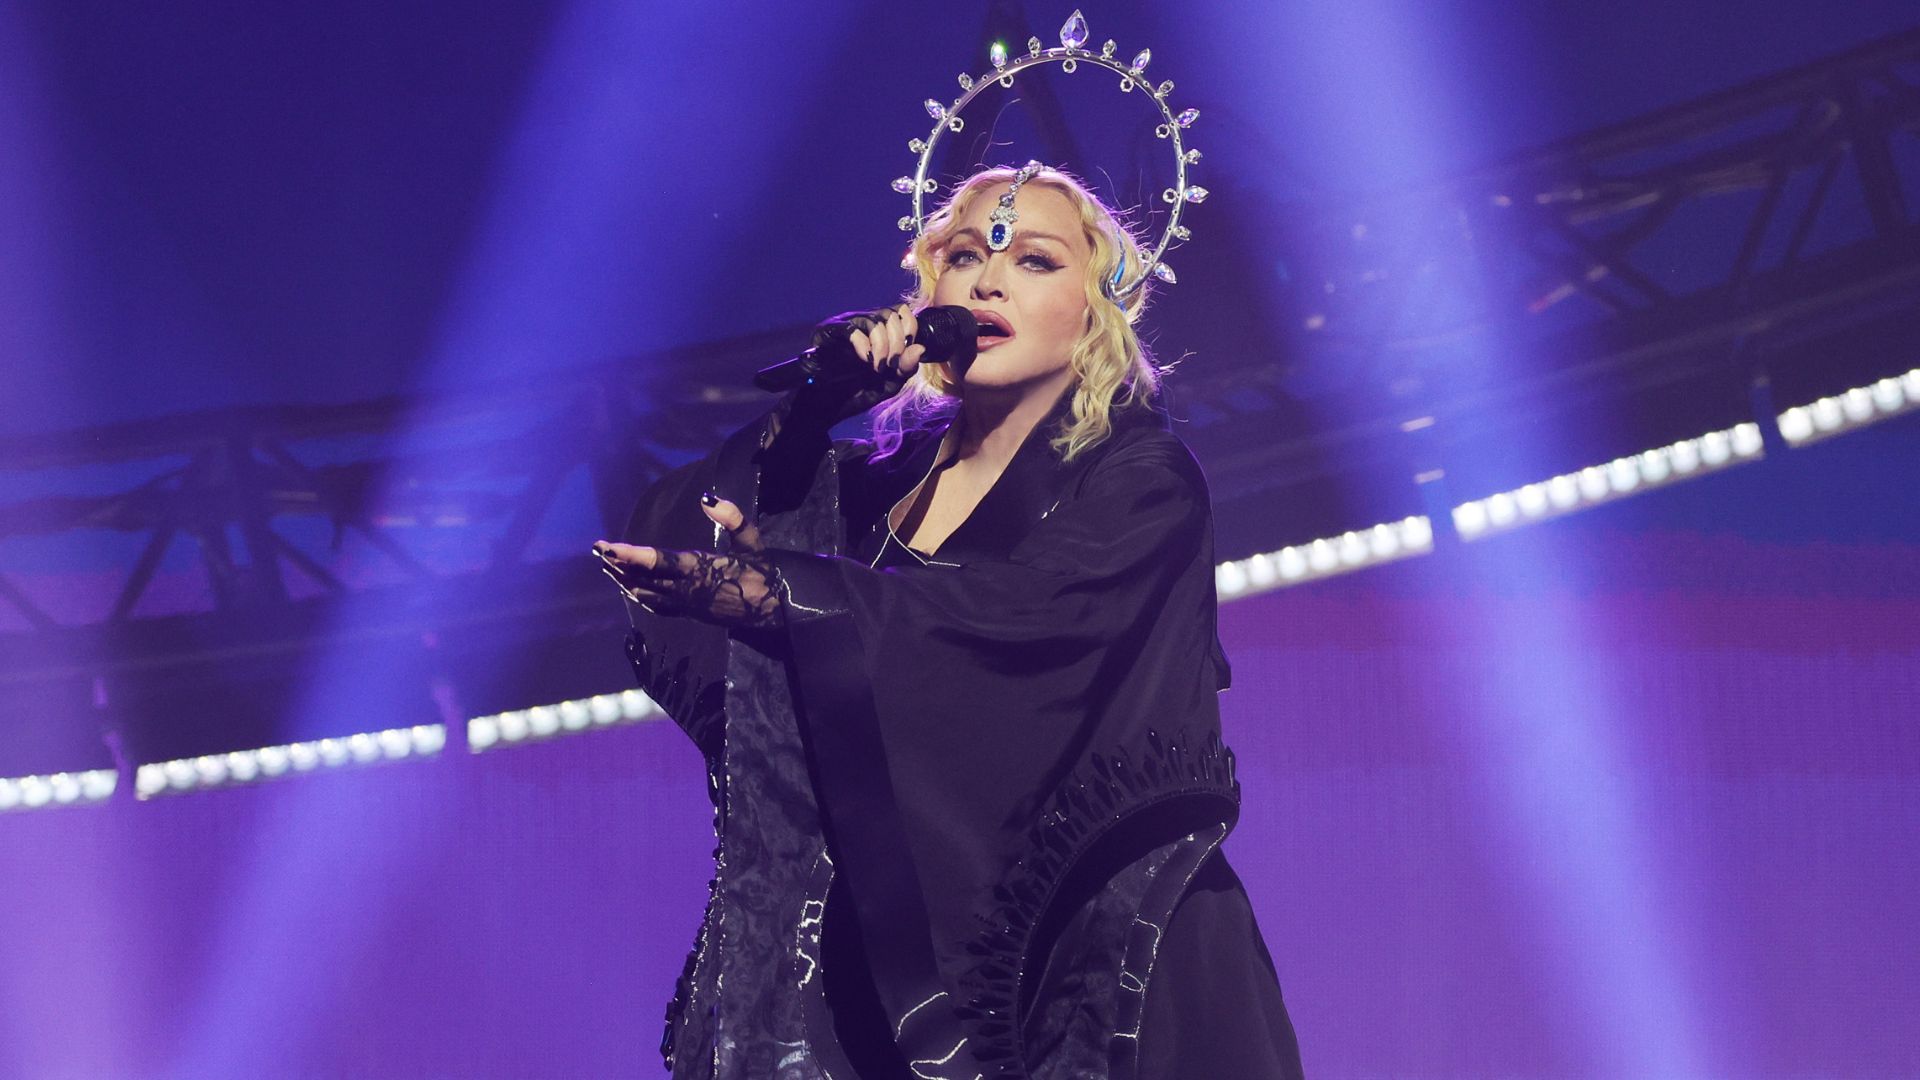 Quanto Madonna vai ganhar por show no Rio?! Cachê milionário e outros gastos impressionantes do evento são revelados